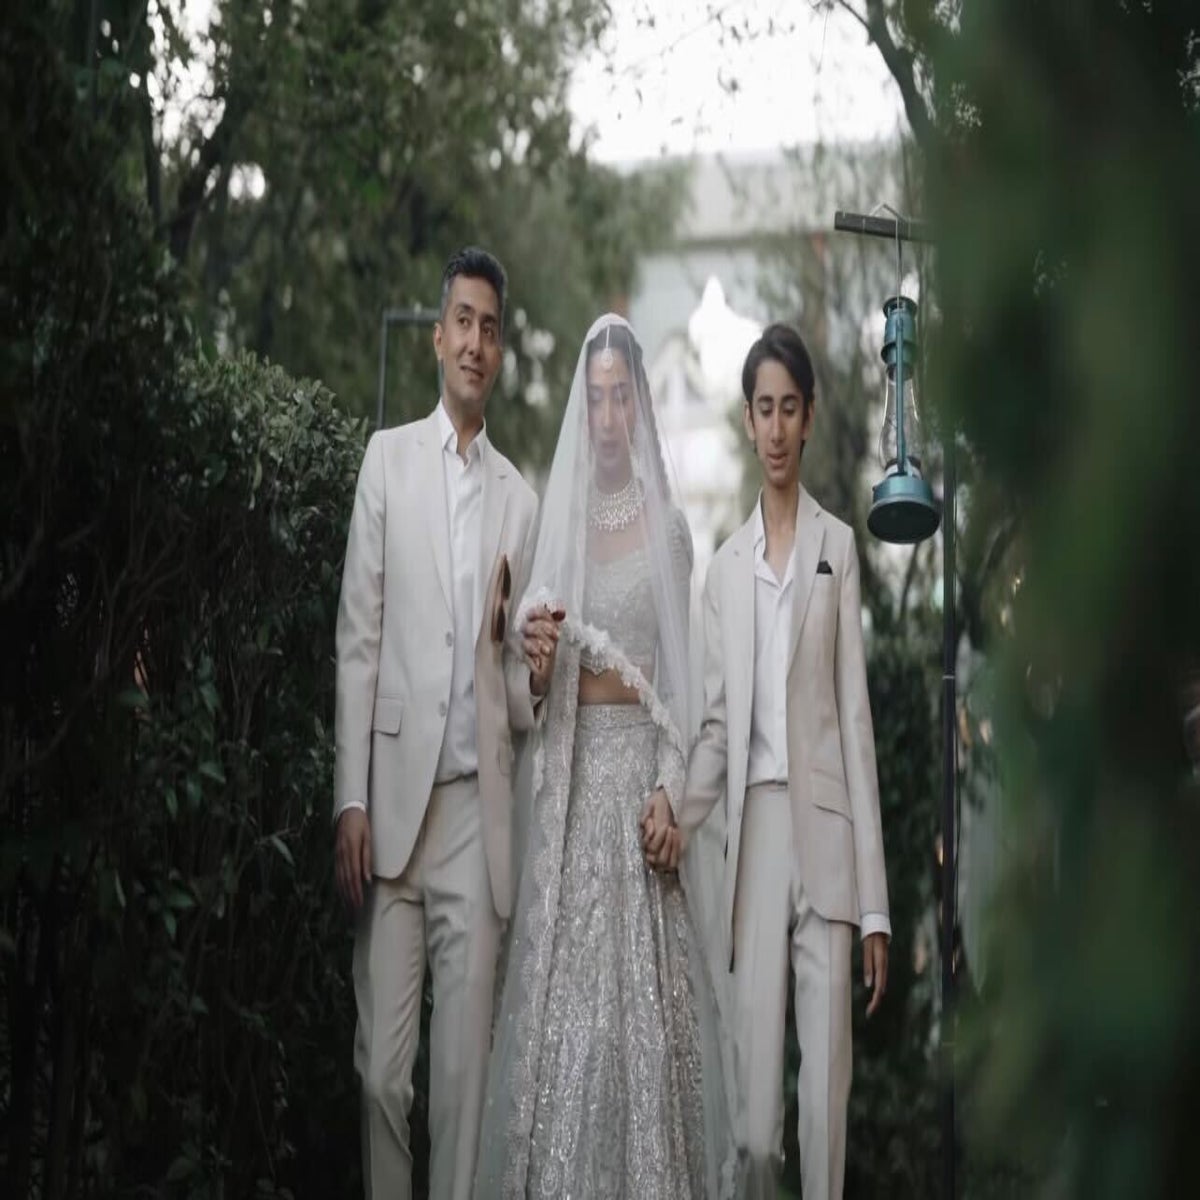 Sexy Mira Khan Xnxx - Pakistani actress Mahira Khan shares regal wedding photos as son walks her  down the aisle | The Independent